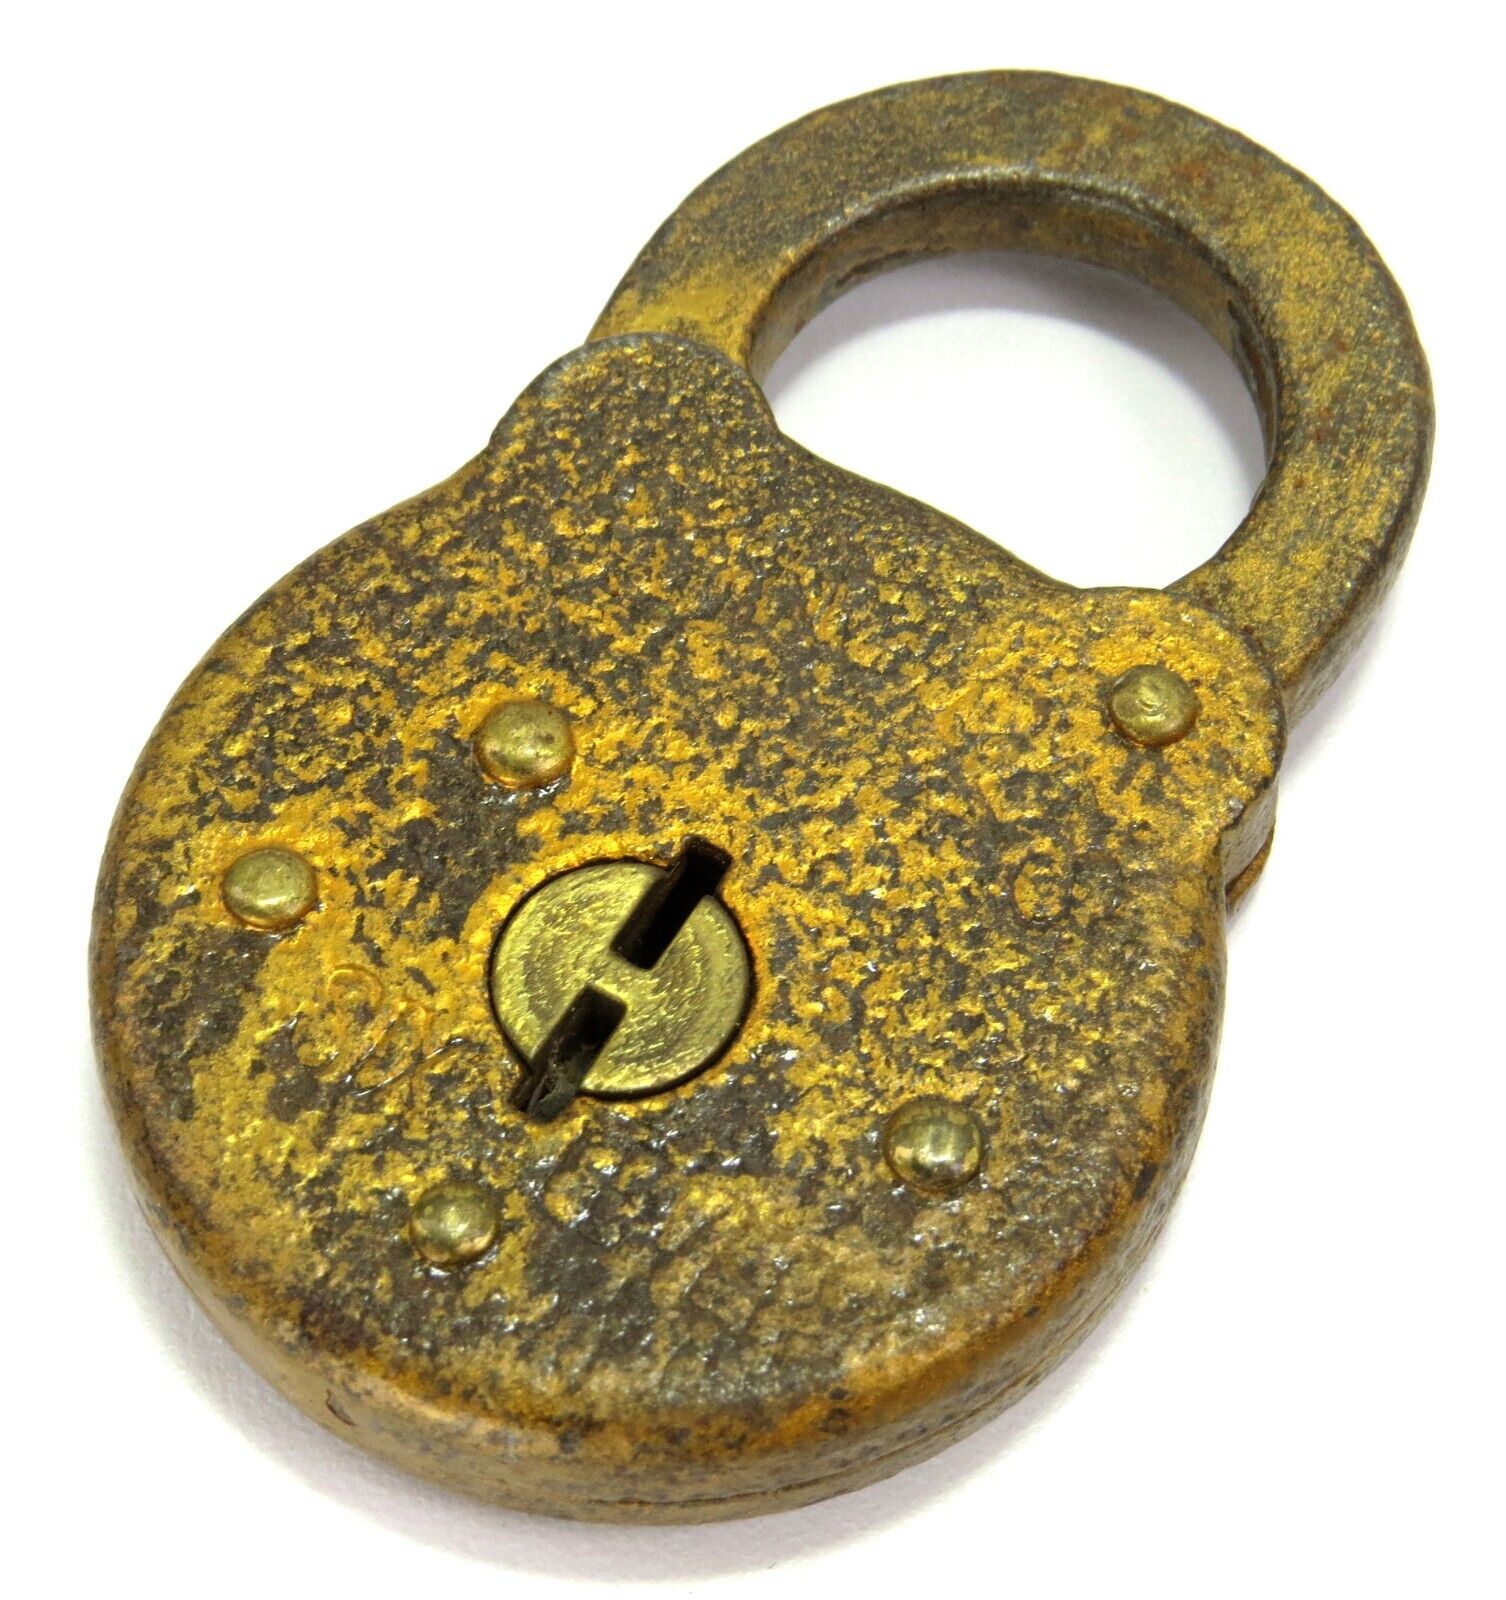 Six Lever Unique Vintage Padlock Lock, 2\